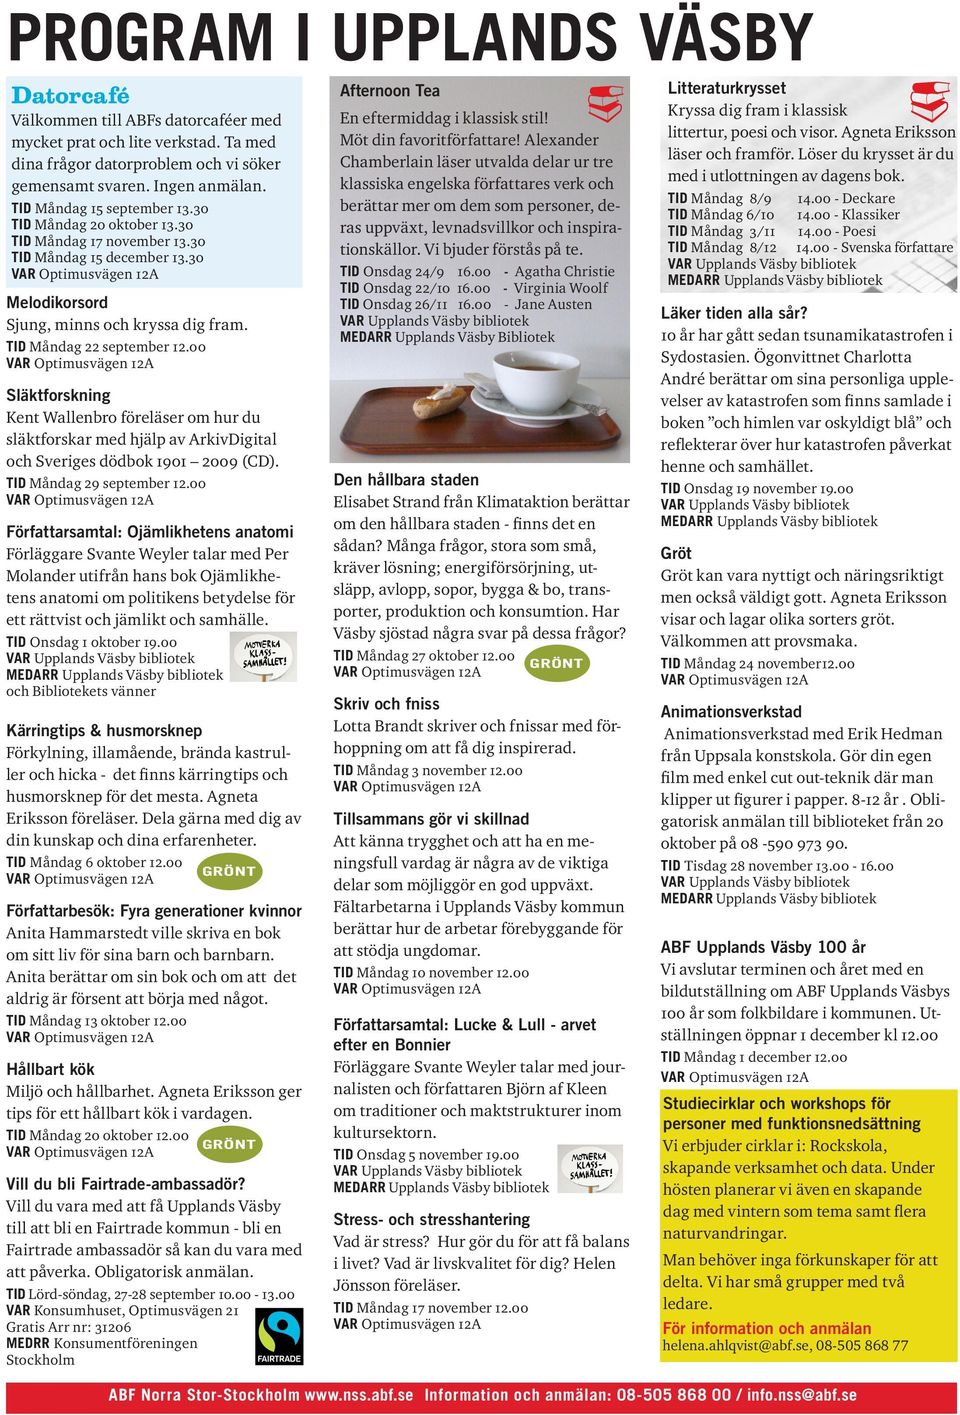 00 Släktforskning Kent Wallenbro föreläser om hur du släktforskar med hjälp av ArkivDigital och Sveriges dödbok 1901 2009 (CD). TID Måndag 29 september 12.